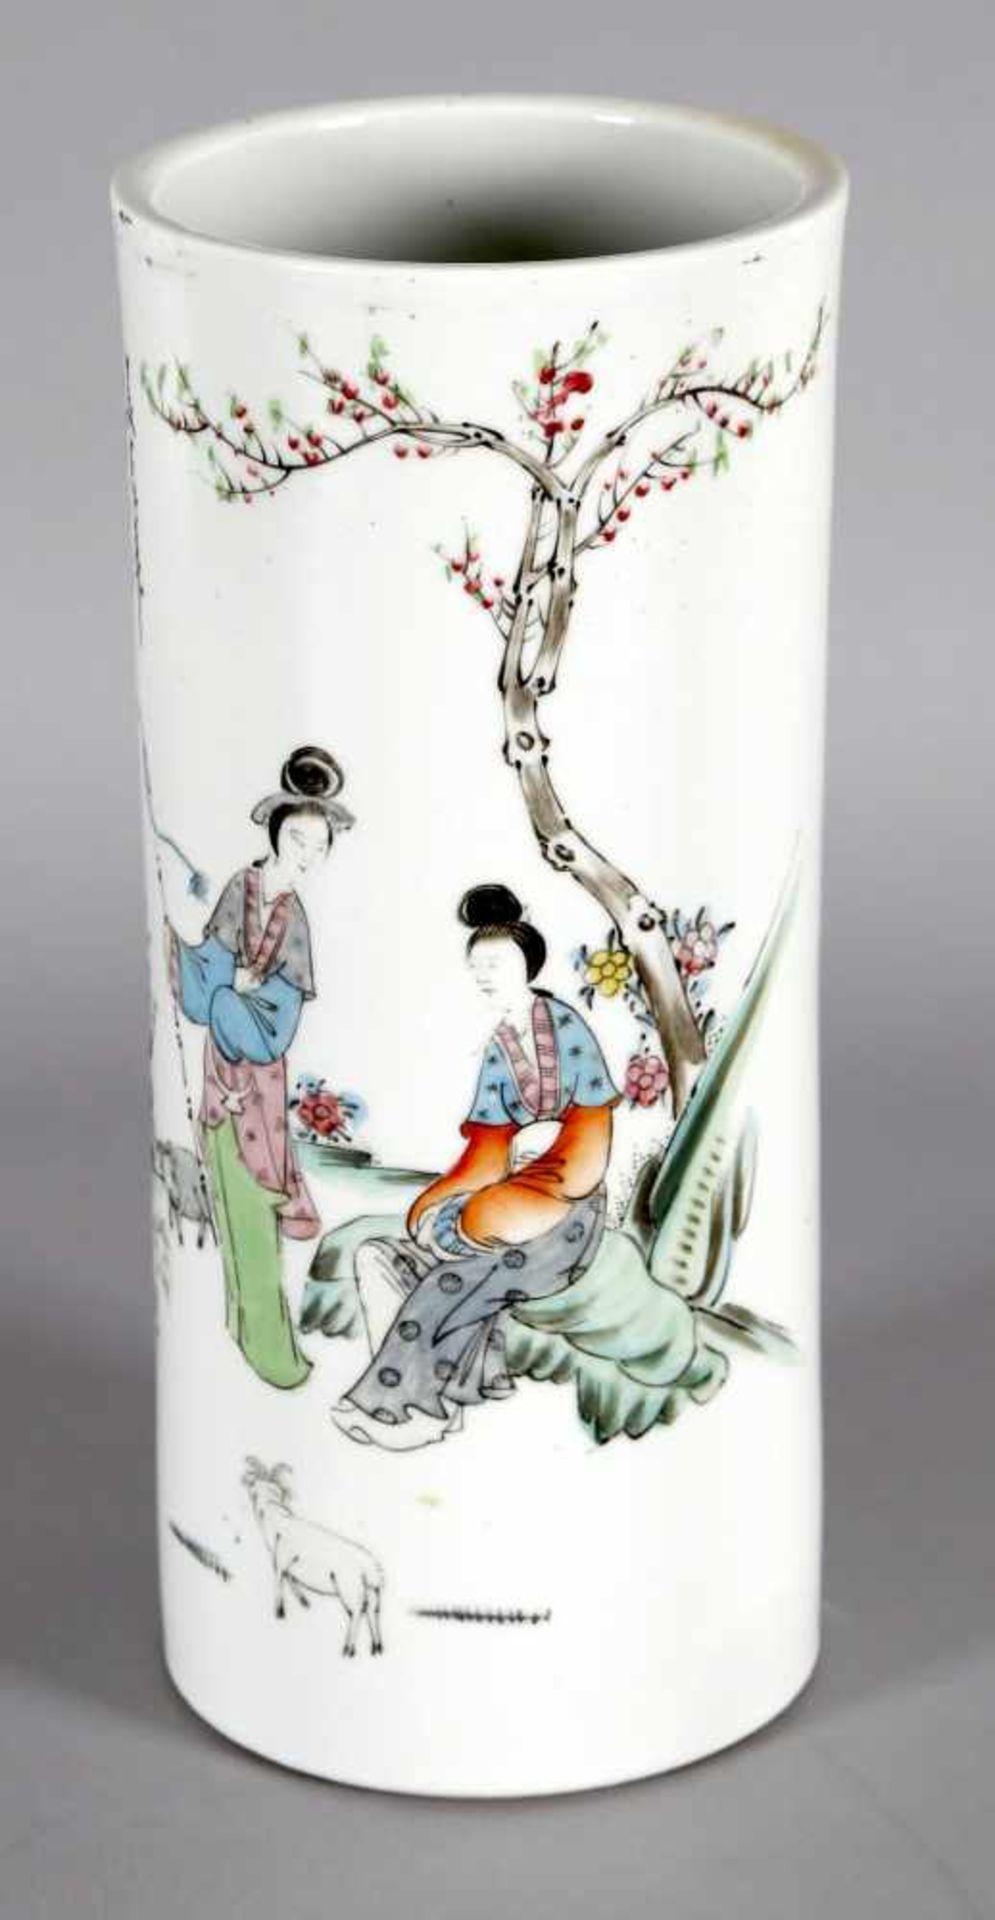 Vase mit Schäferin in Landschaft, China, 19./20. Jh.zylindrische Form, polychromer Dekor in